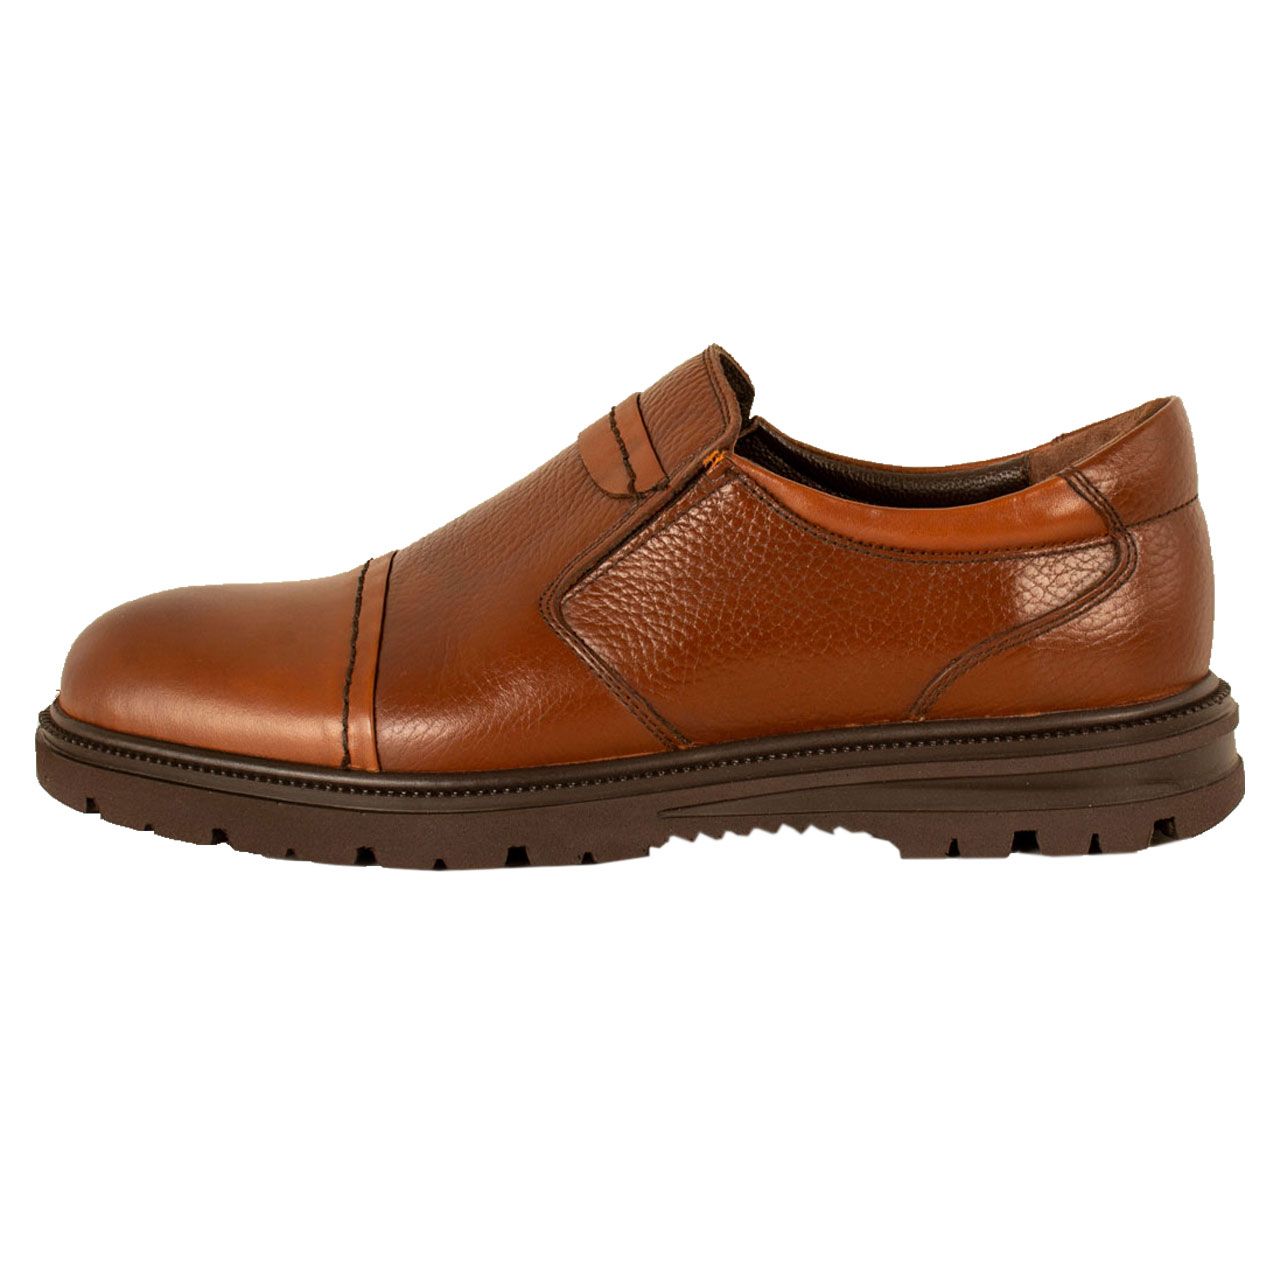  کفش روزمره مردانه پارینه چرم مدل SHO199-1 -  - 1